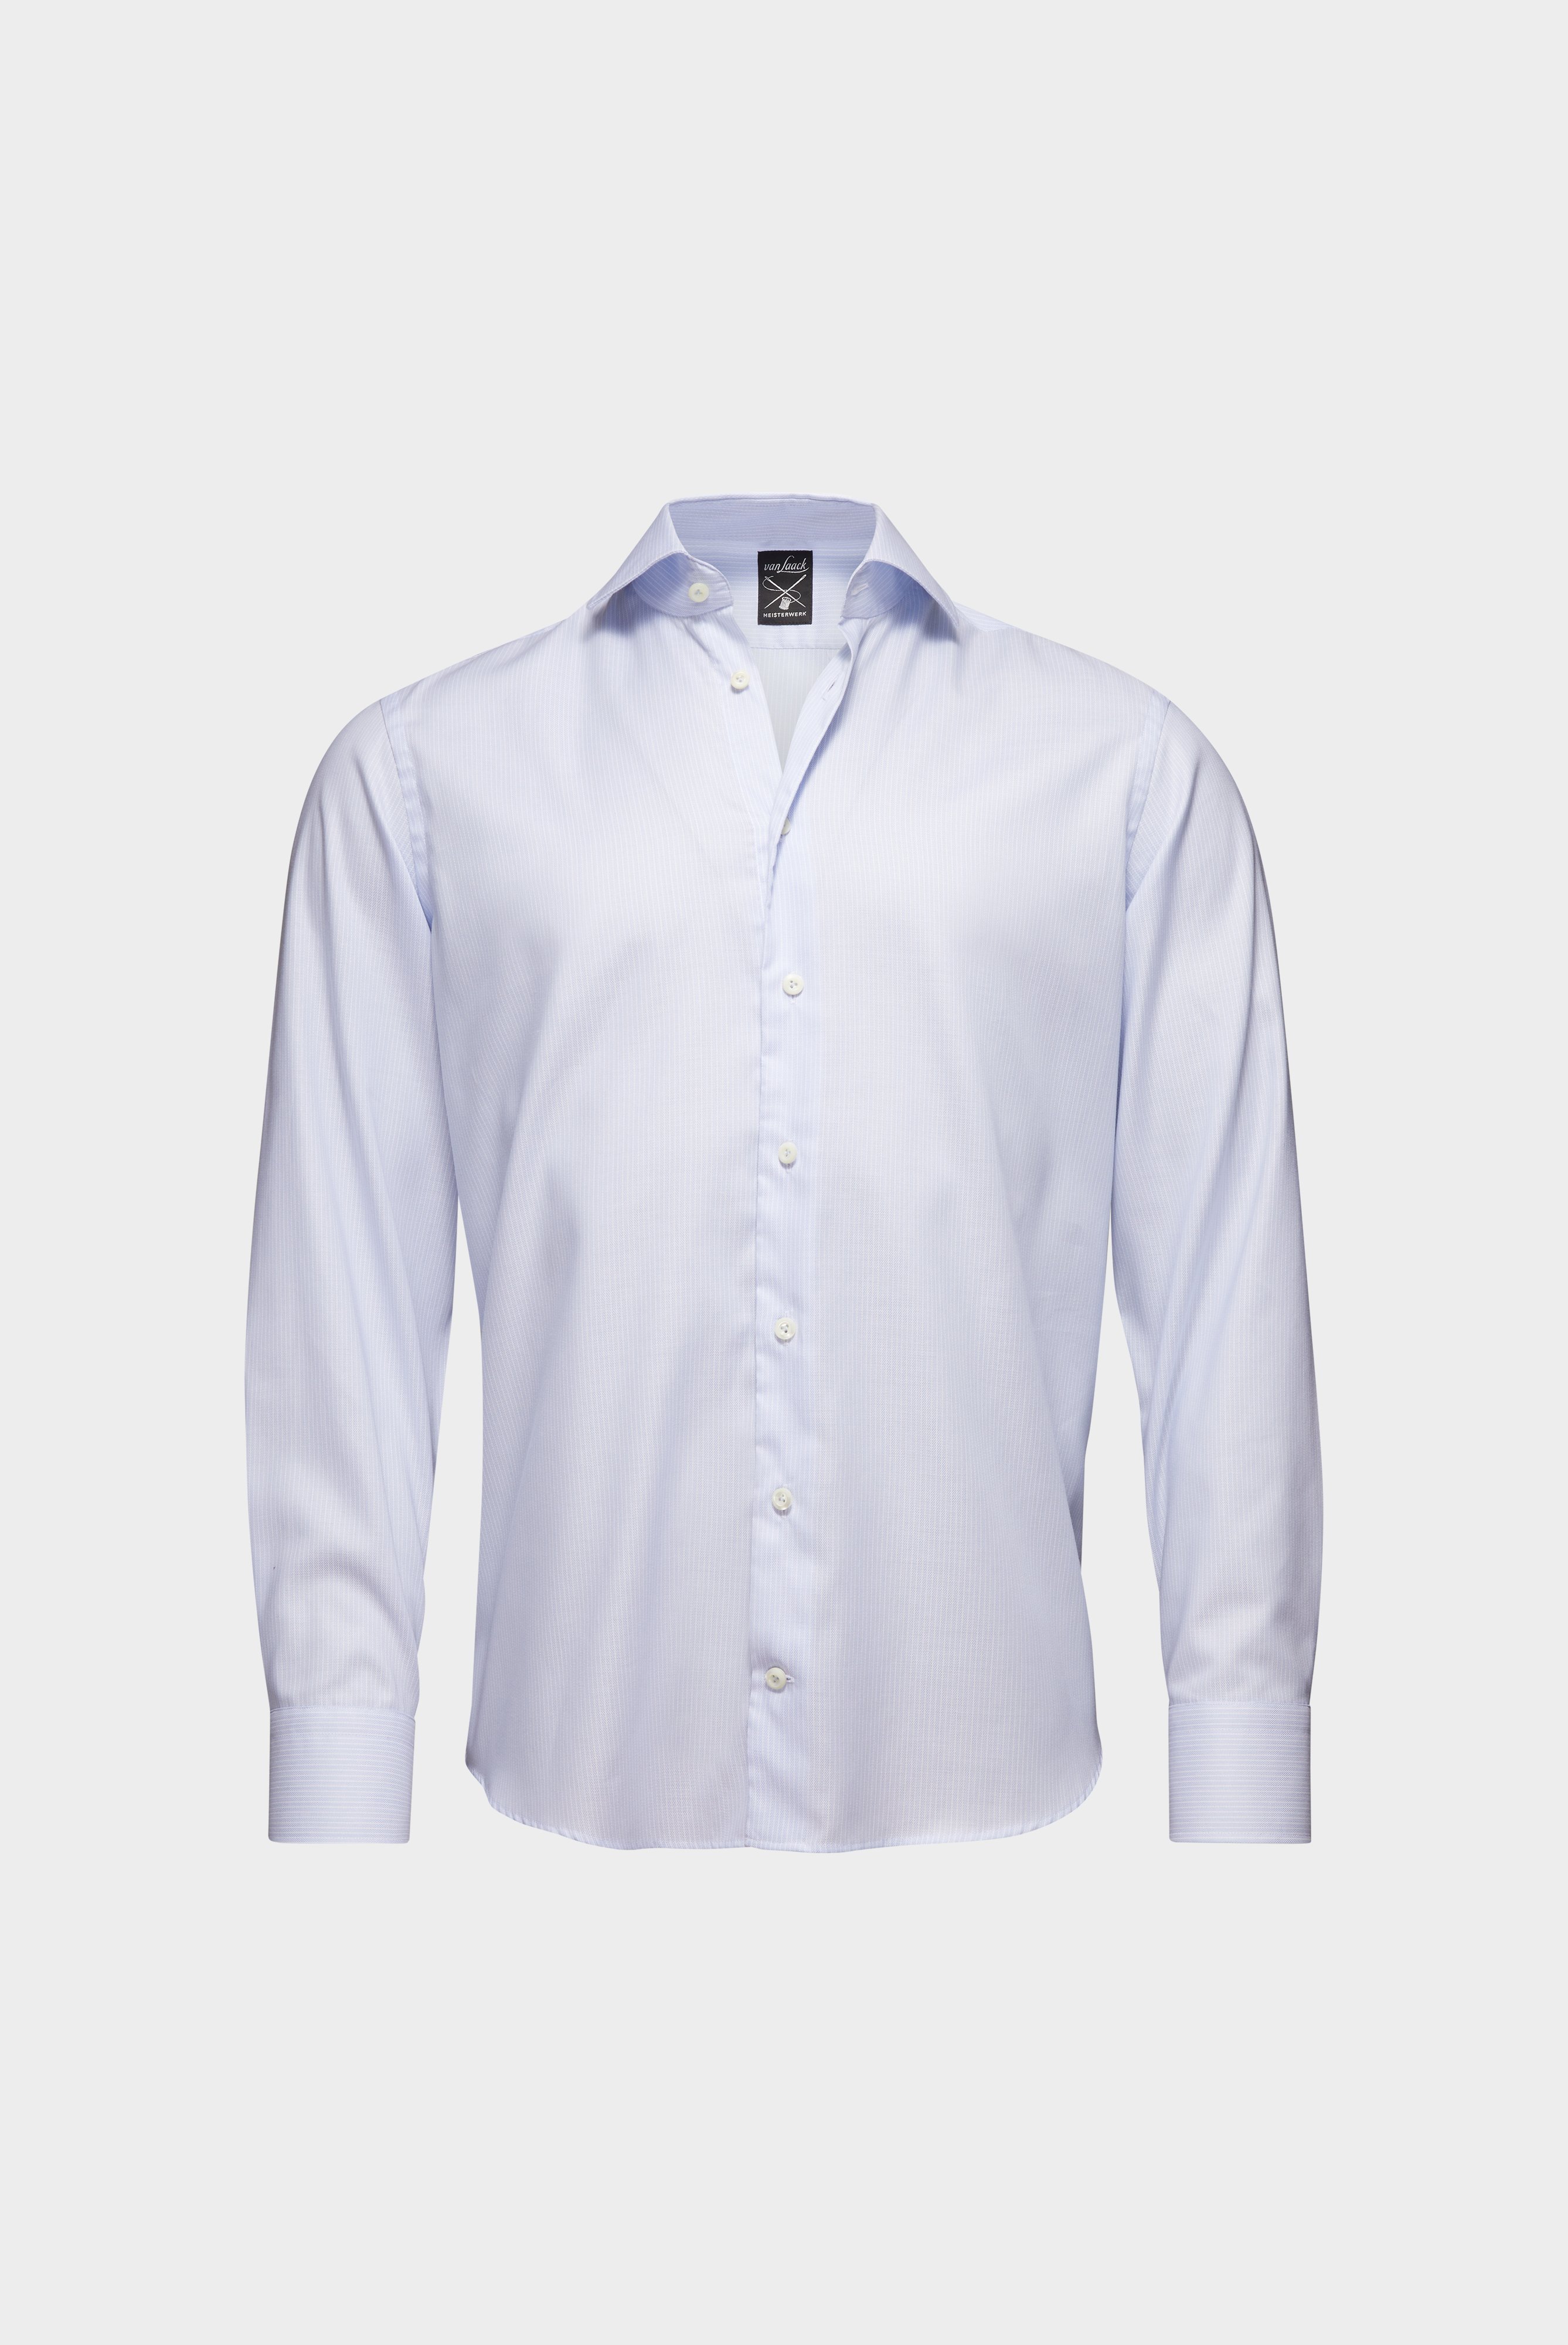 Bügelleichte Hemden+Bügelfreies Hemd mit Streifen Tailor Fit+20.2020.BQ.161109.710.38